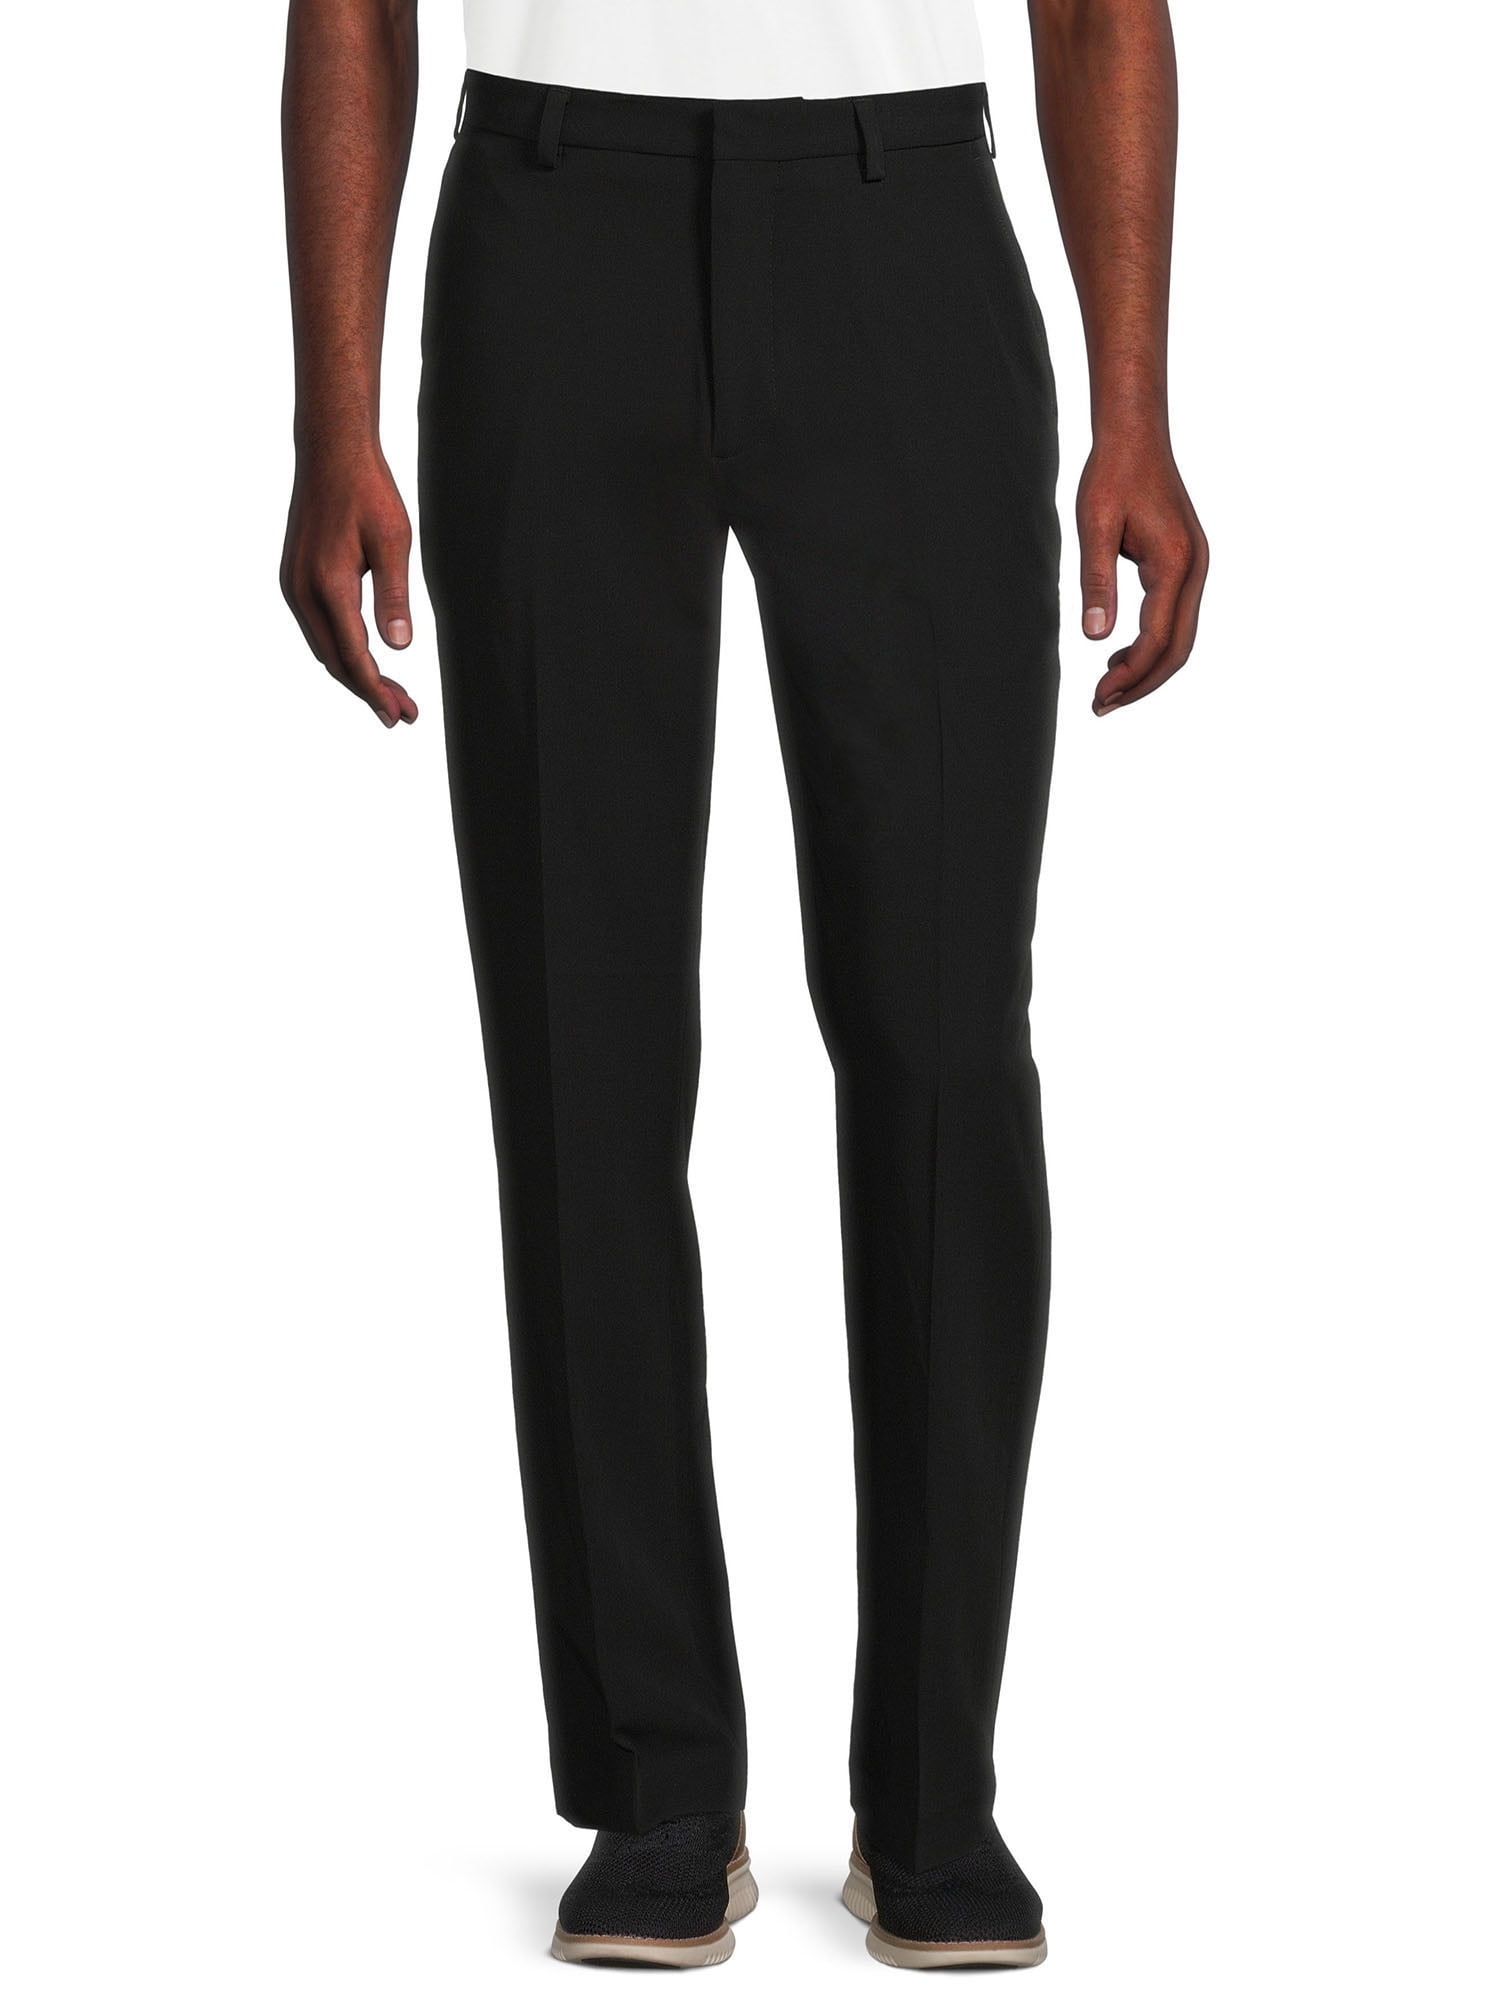 Plaid&Plain Men's Stretch Dress Pants Slim Fit Skinny Suit Pants 7101 Black  27W28L at Amazon Men's Clothing store